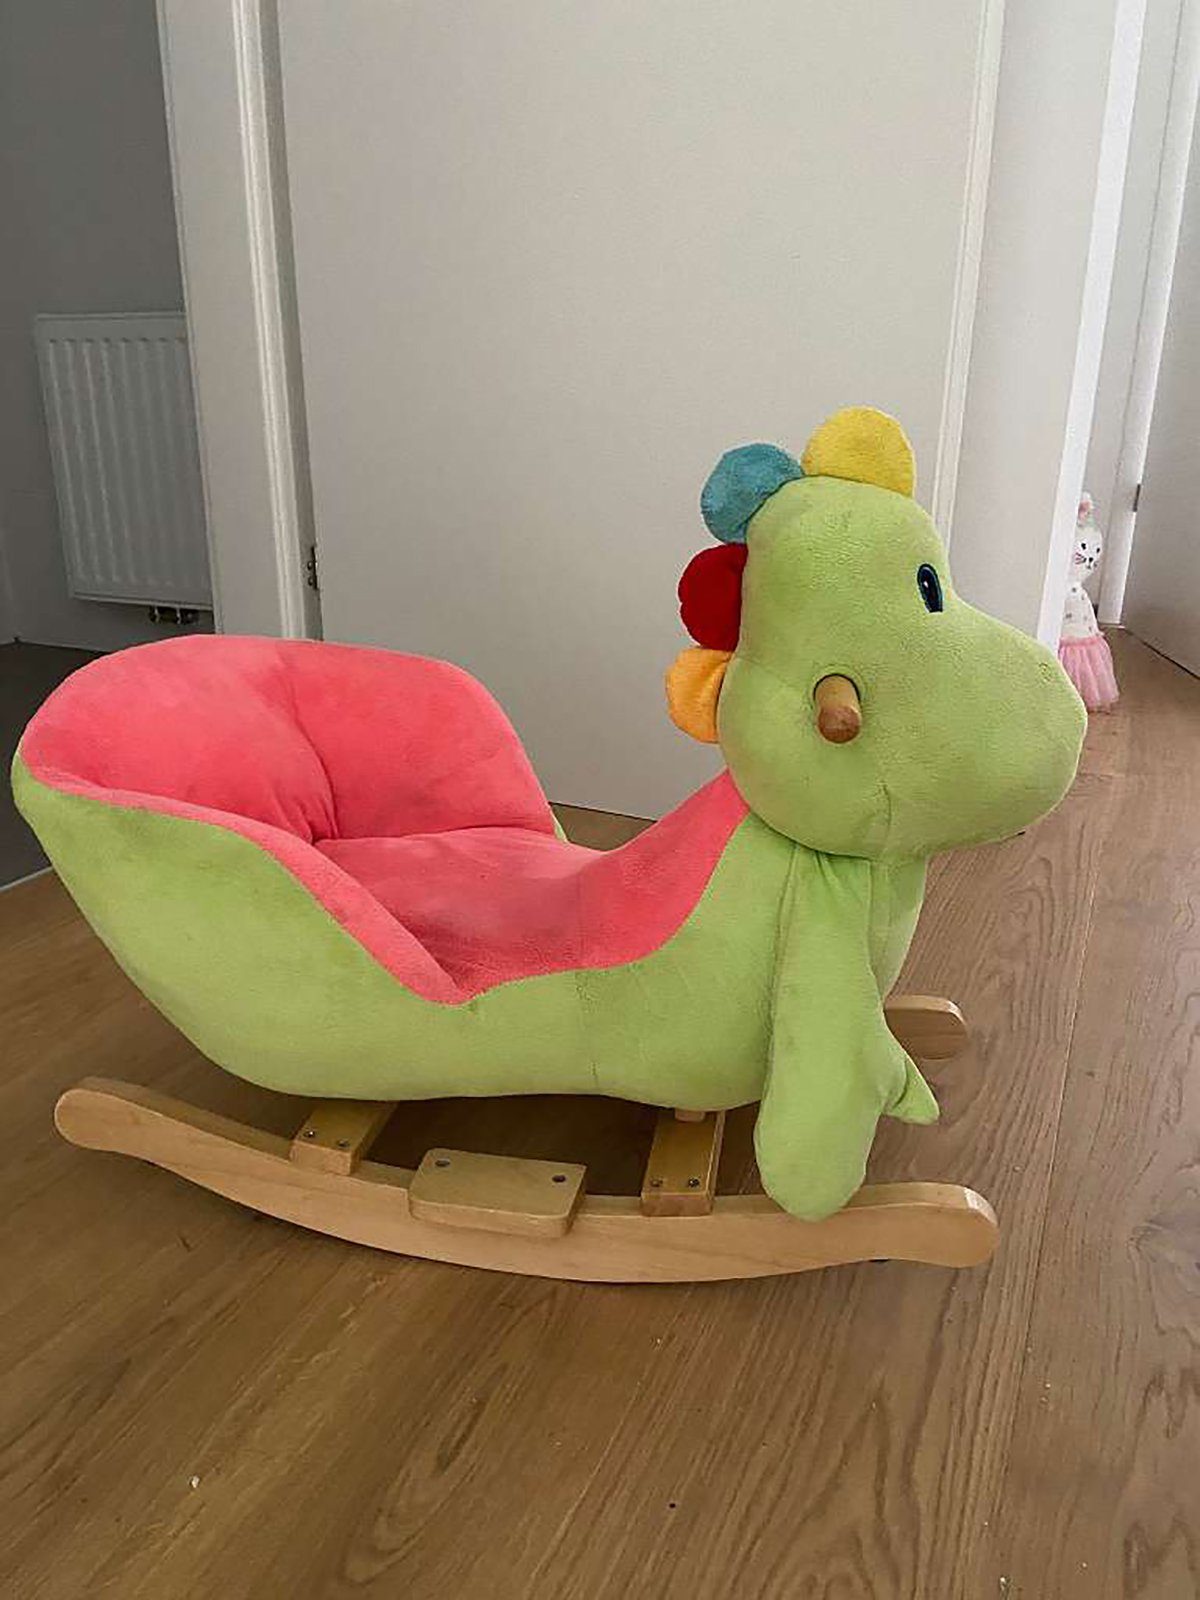 Lustig Babyspielzeug Stuhl DOTMALL Schaukelpferd Schaukeltier Dinosaurier Kinderstuhl